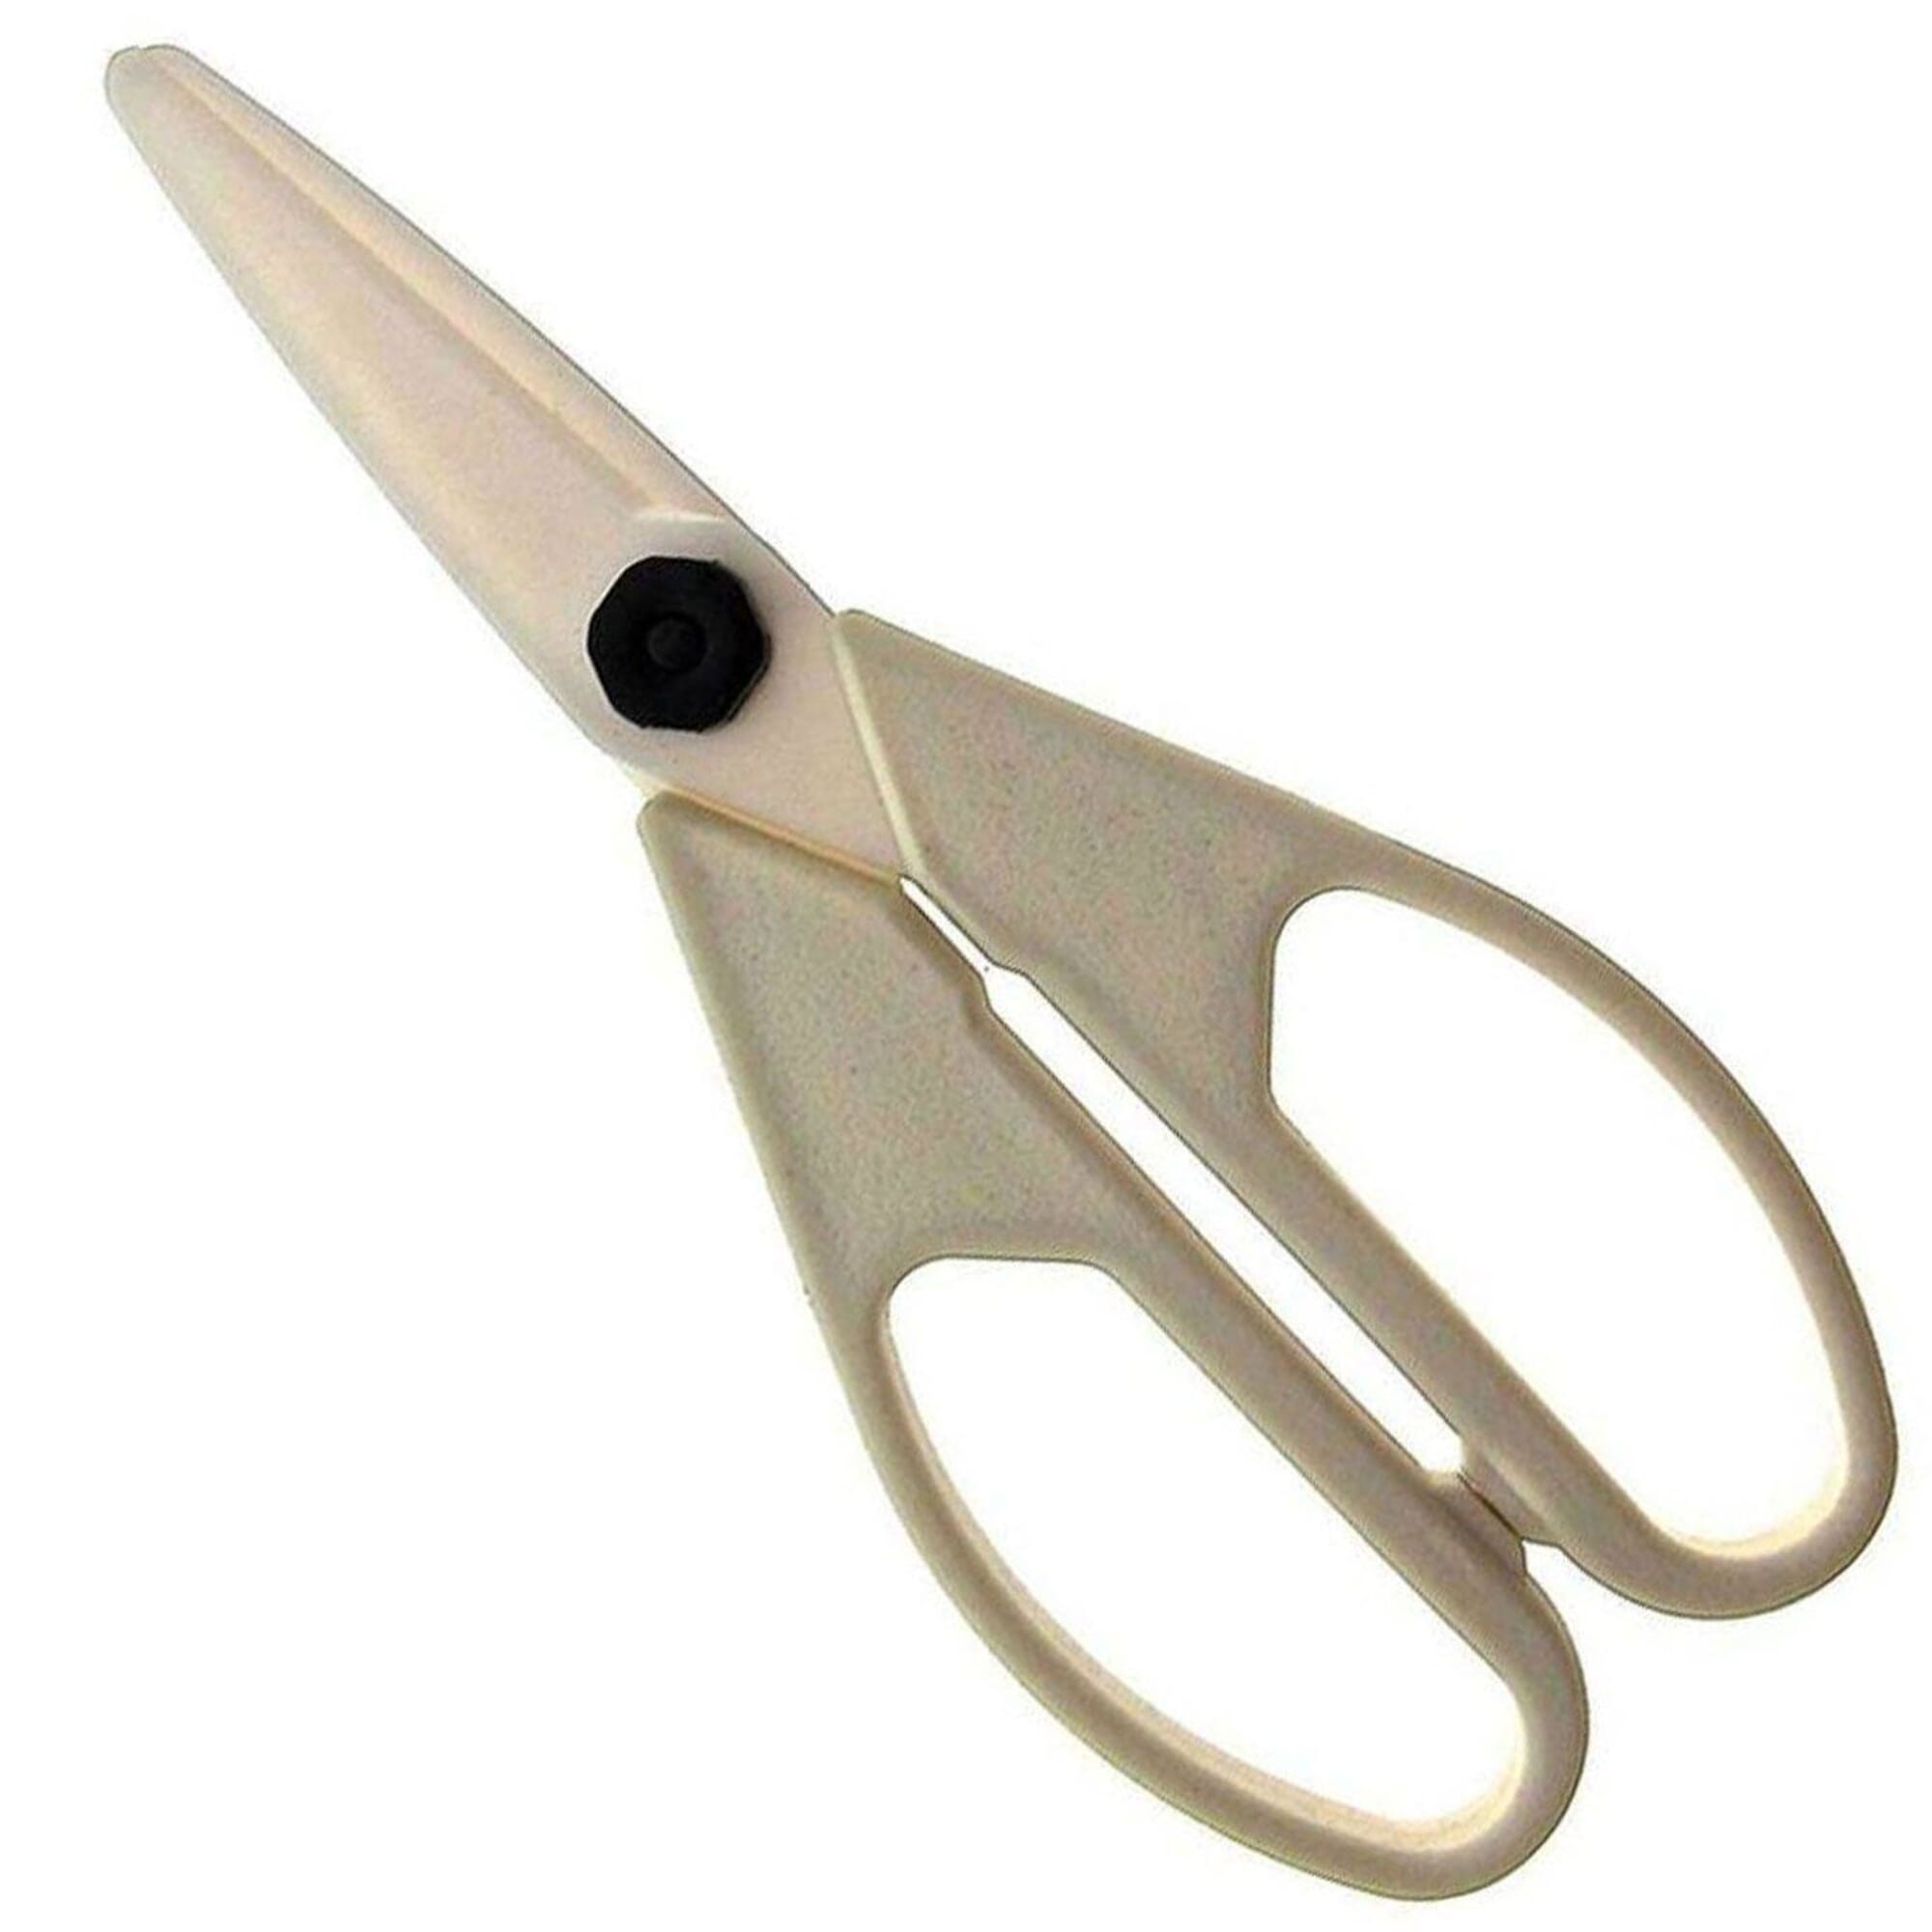 Ceramic Cutting Paper Scissors, Ceramic Cutter Scissors